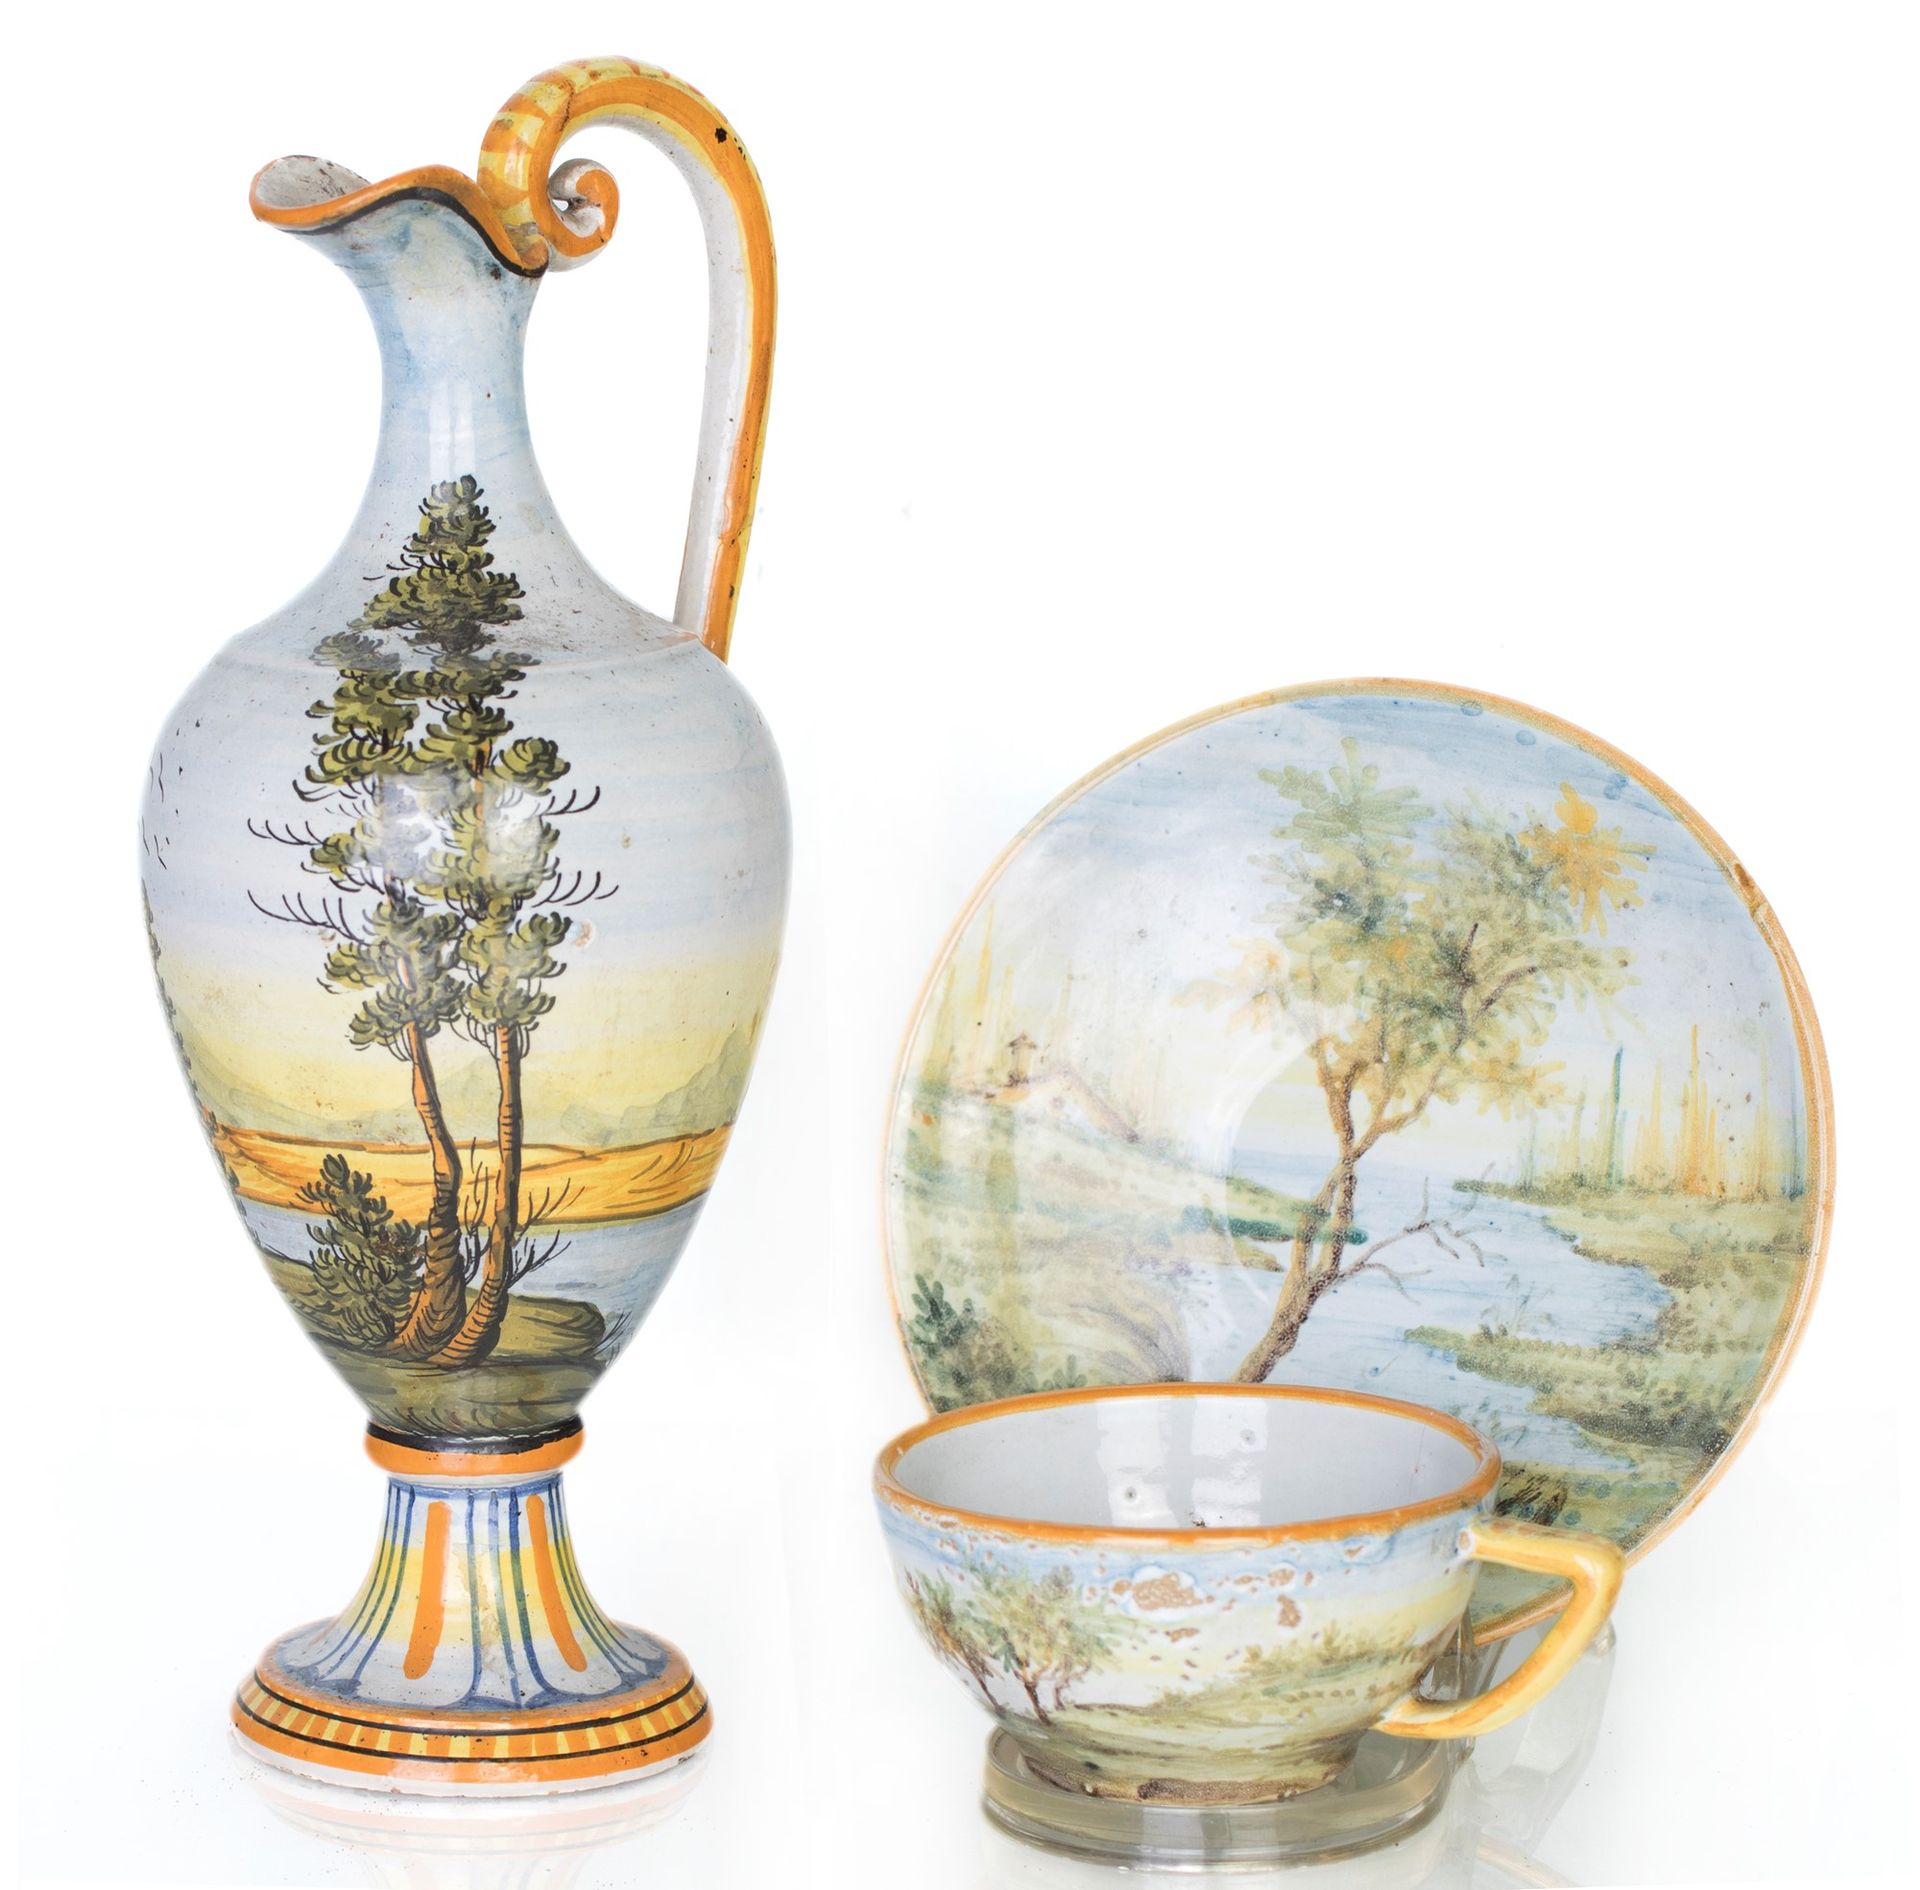 Castelli ceramic jug and cup with saucer decorado con paisajes en los tonos cara&hellip;